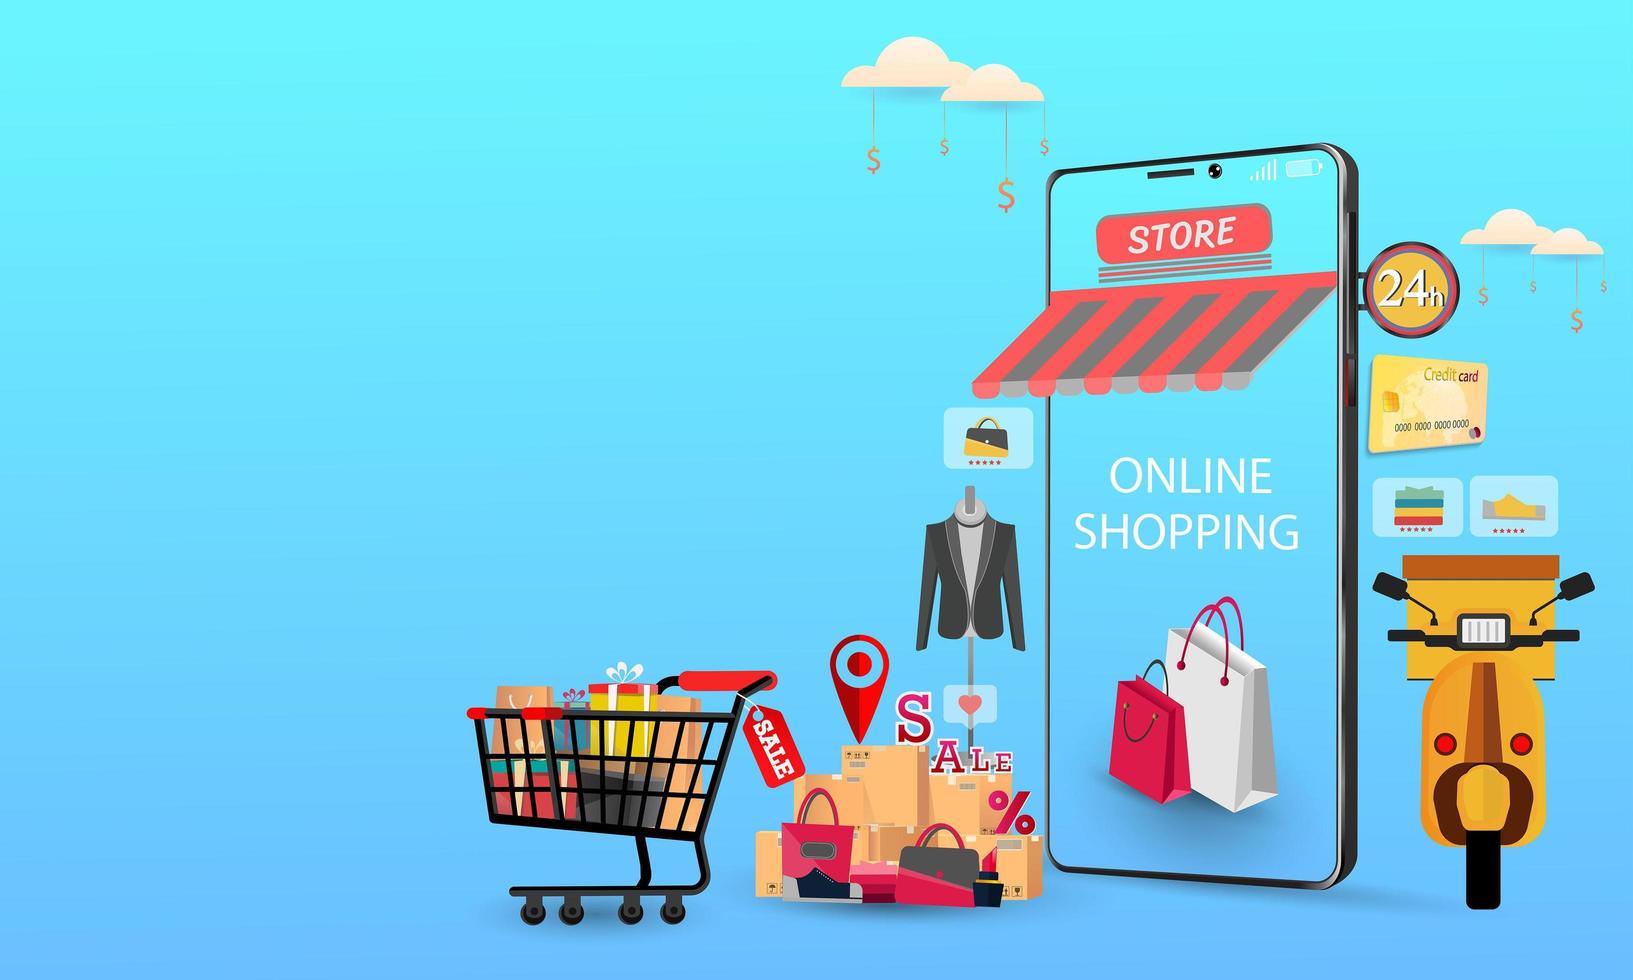 Mobiltelefon stellt die Vorderseite des Shops dar. Online-Shopping auf der Website oder Konzeptmarketing für mobile Anwendungen und digitales Marketing. vektor